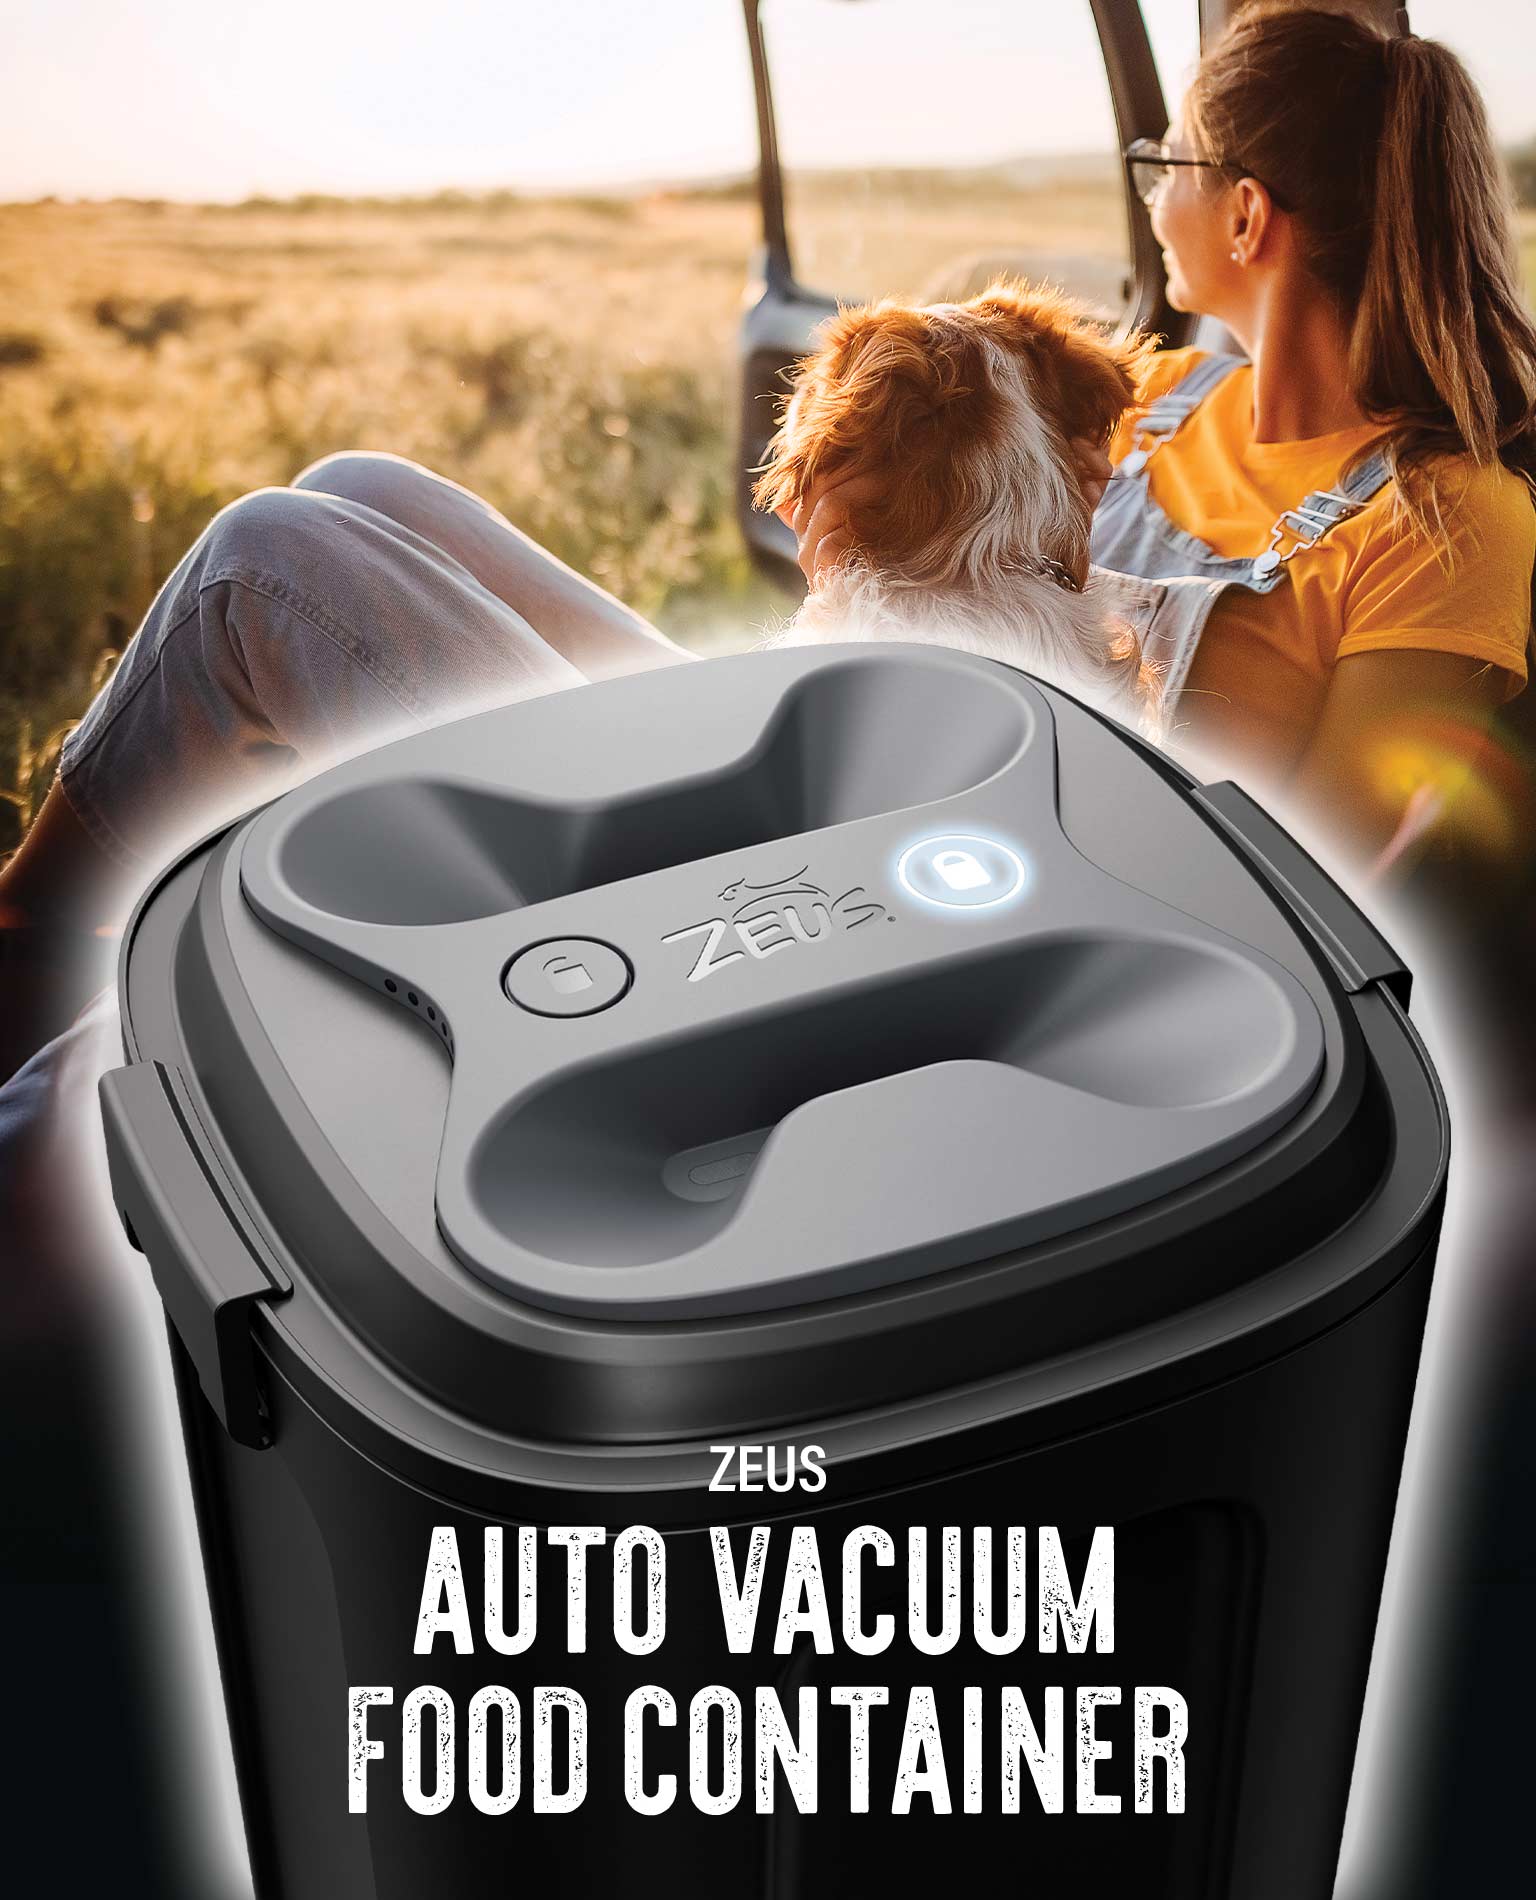 Zeus Auto Vacuum Food Container